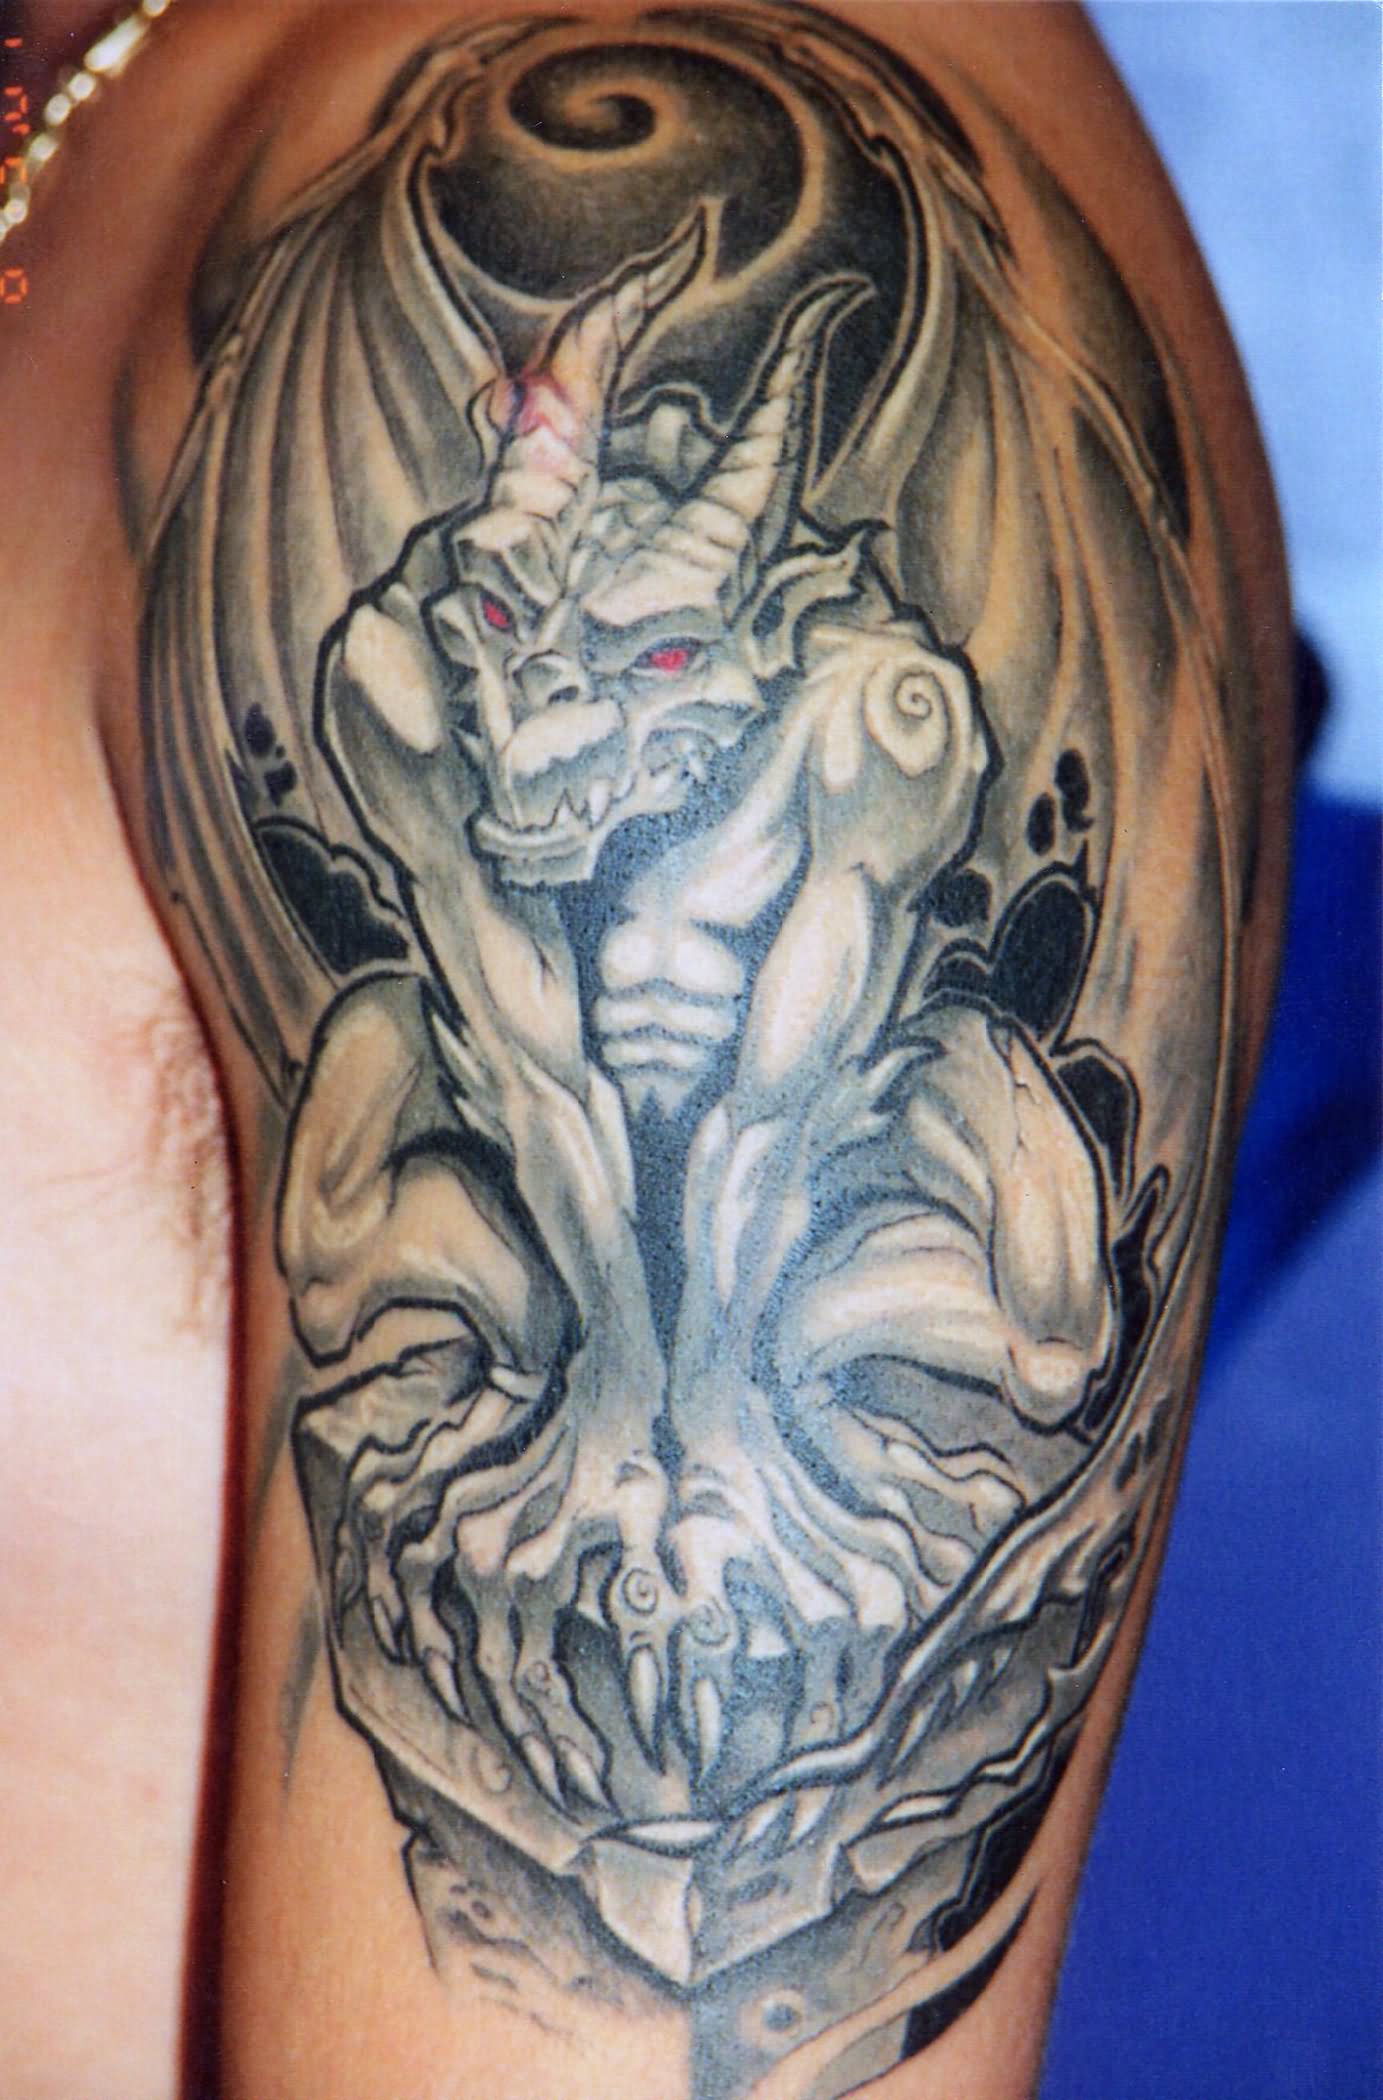 Stone Gargoyle With Red Eyes Tattoo On Left Half Sleeve